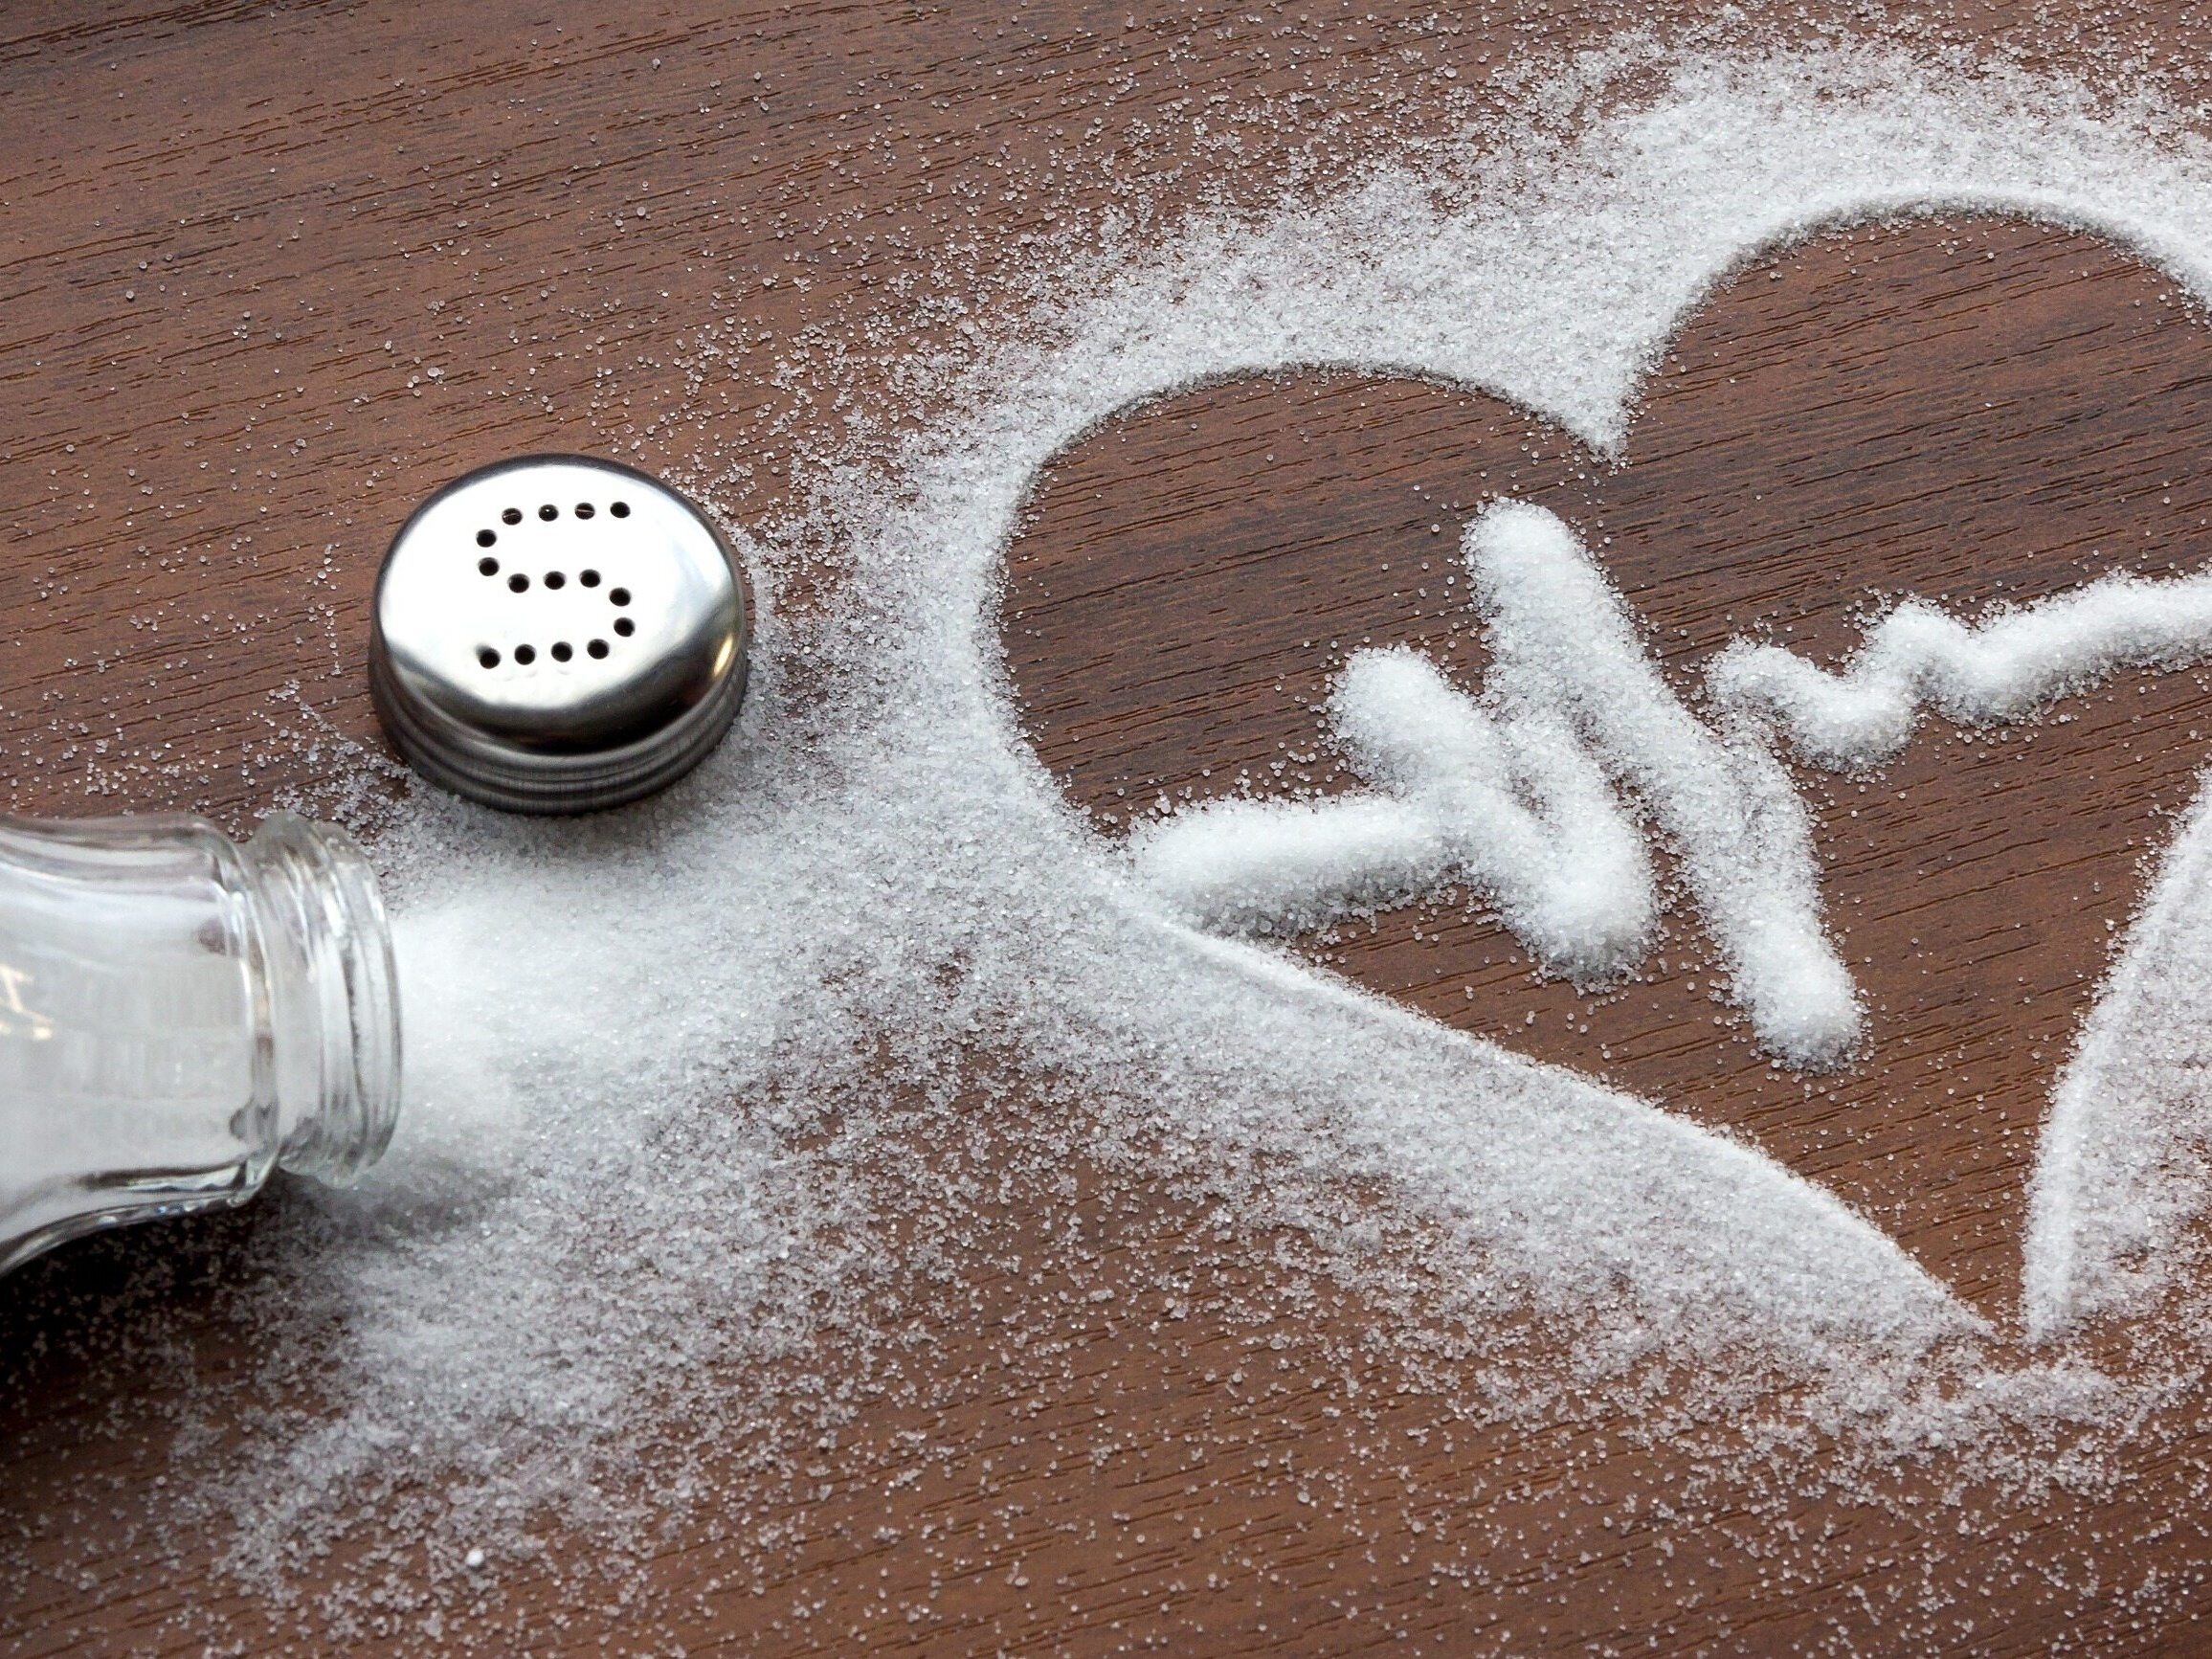 Я люблю тебя больше чем соль. Уменьшение потребления соли. Снижение употребления поваренной соли. Ограничение потребления соли. Злоупотребление поваренной солью.